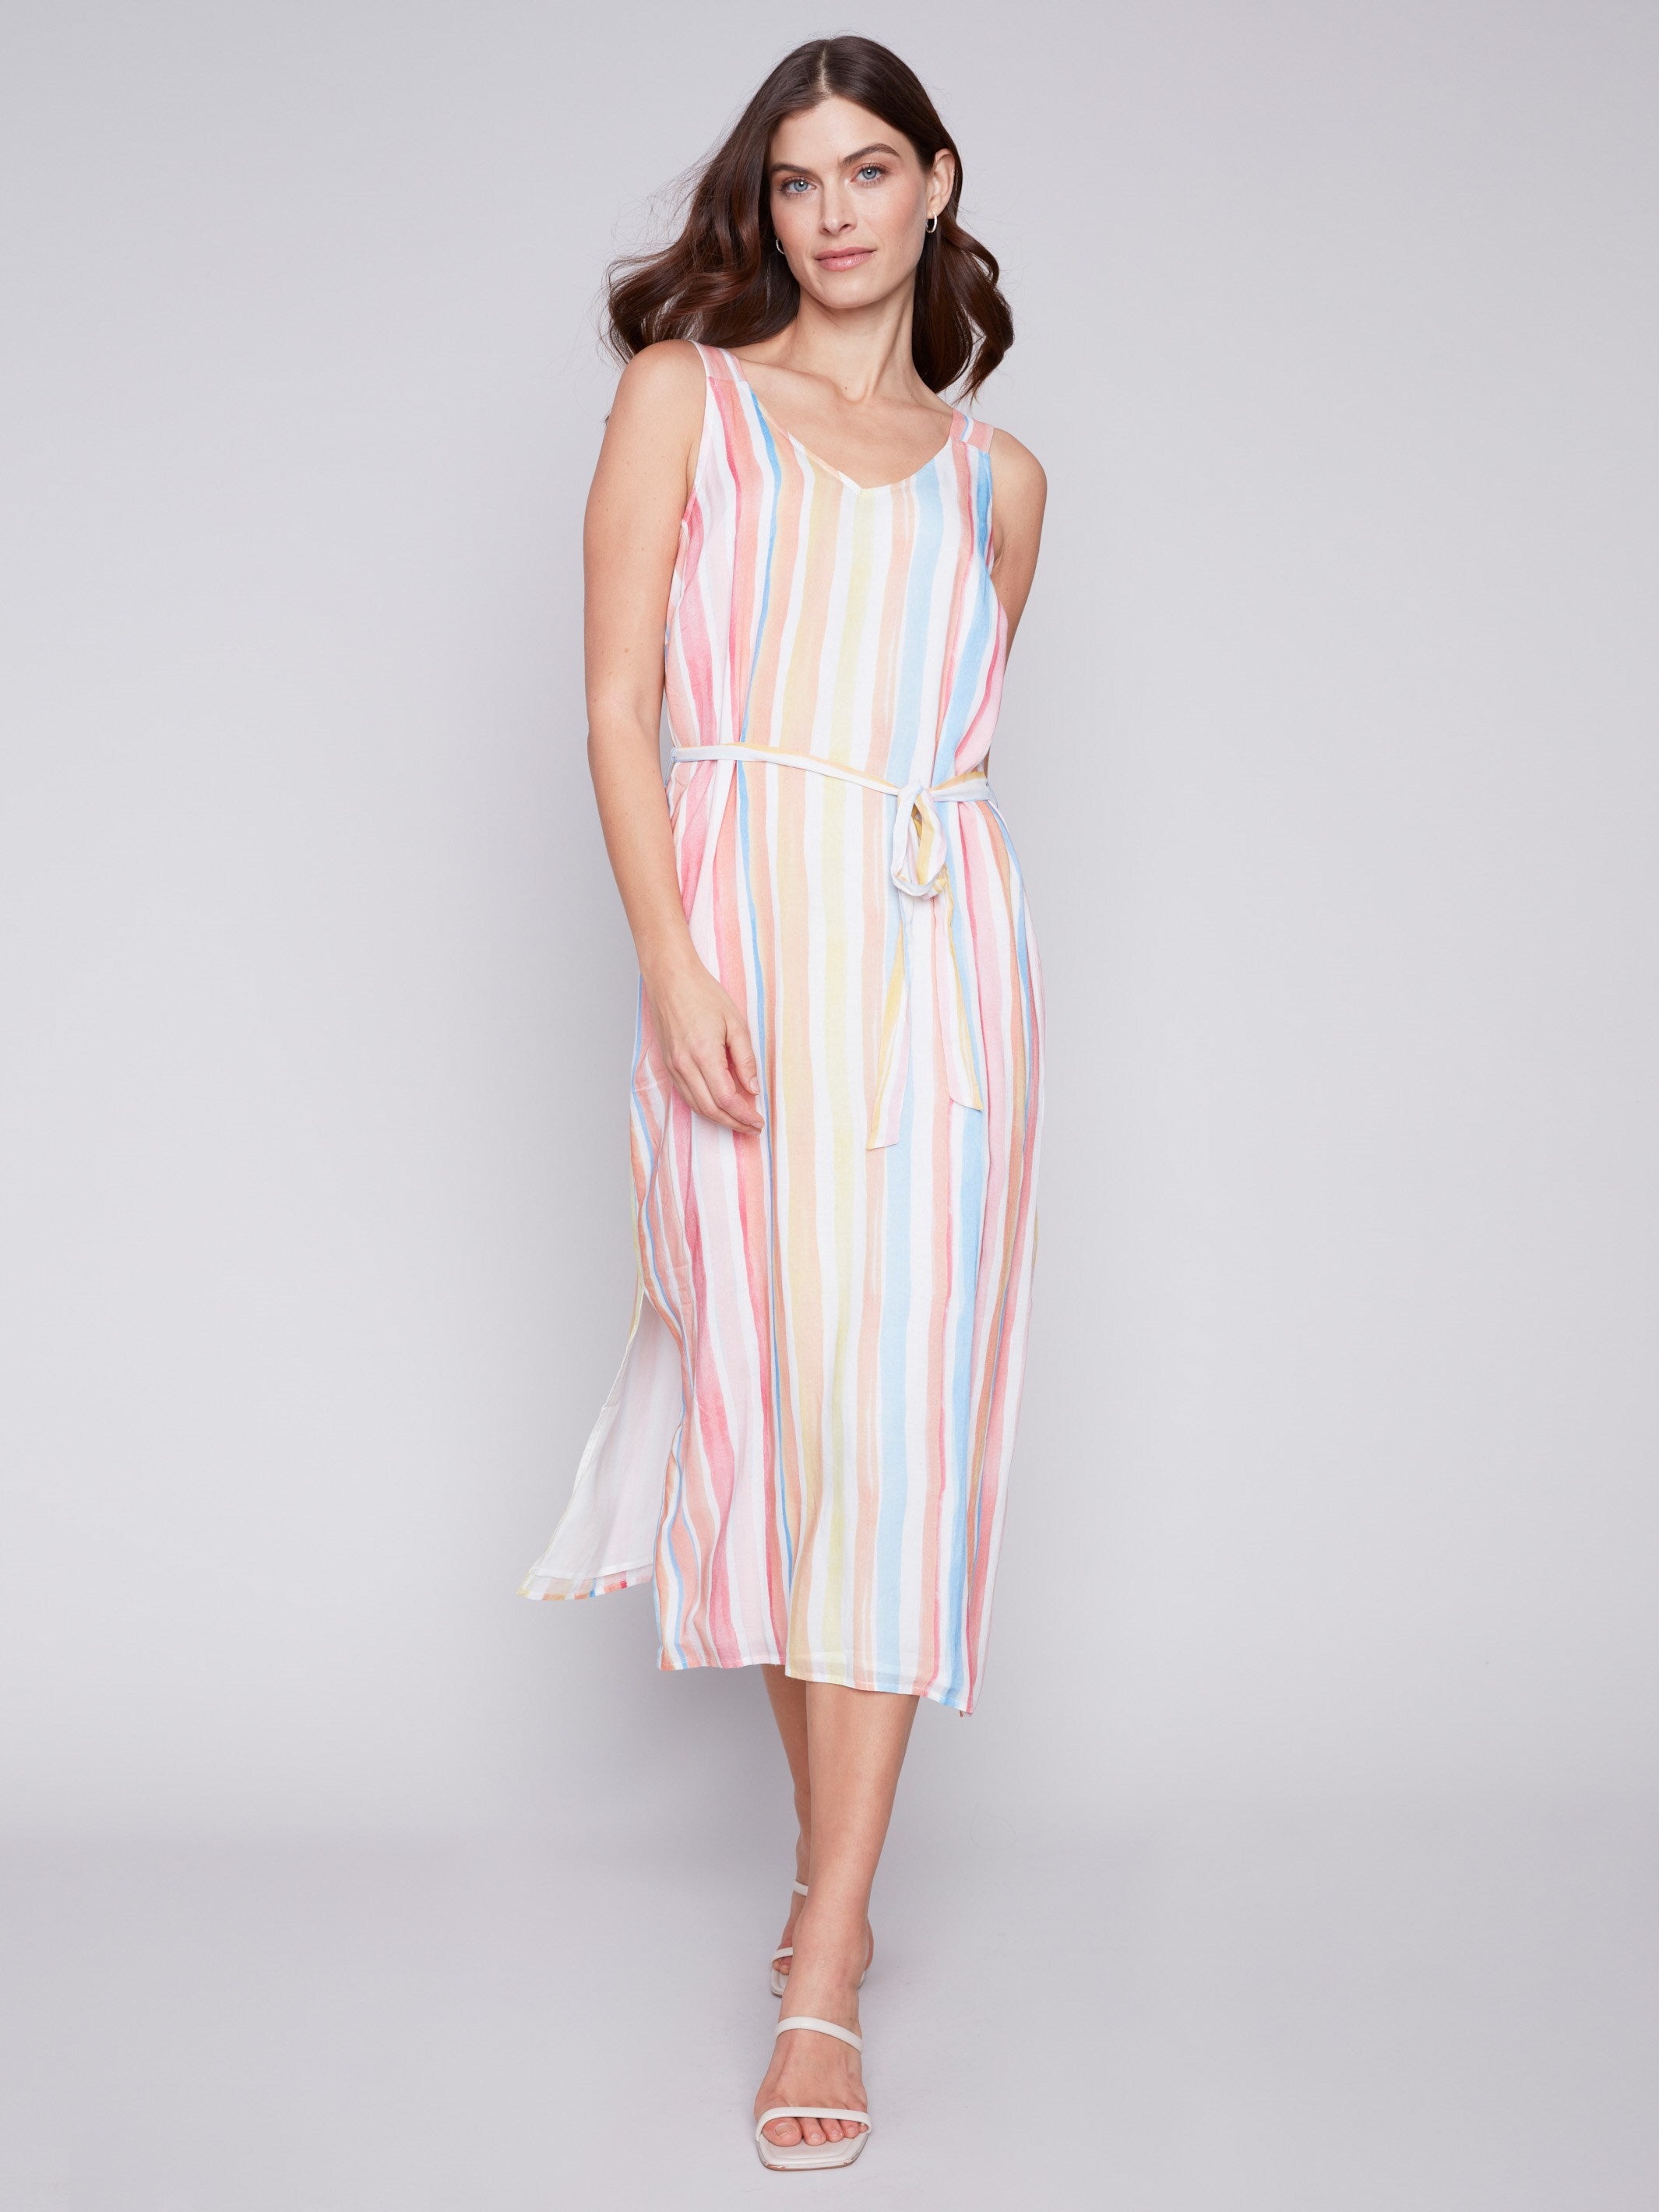 Charlie B Printed Chiffon Dress - Stripes - Image 4